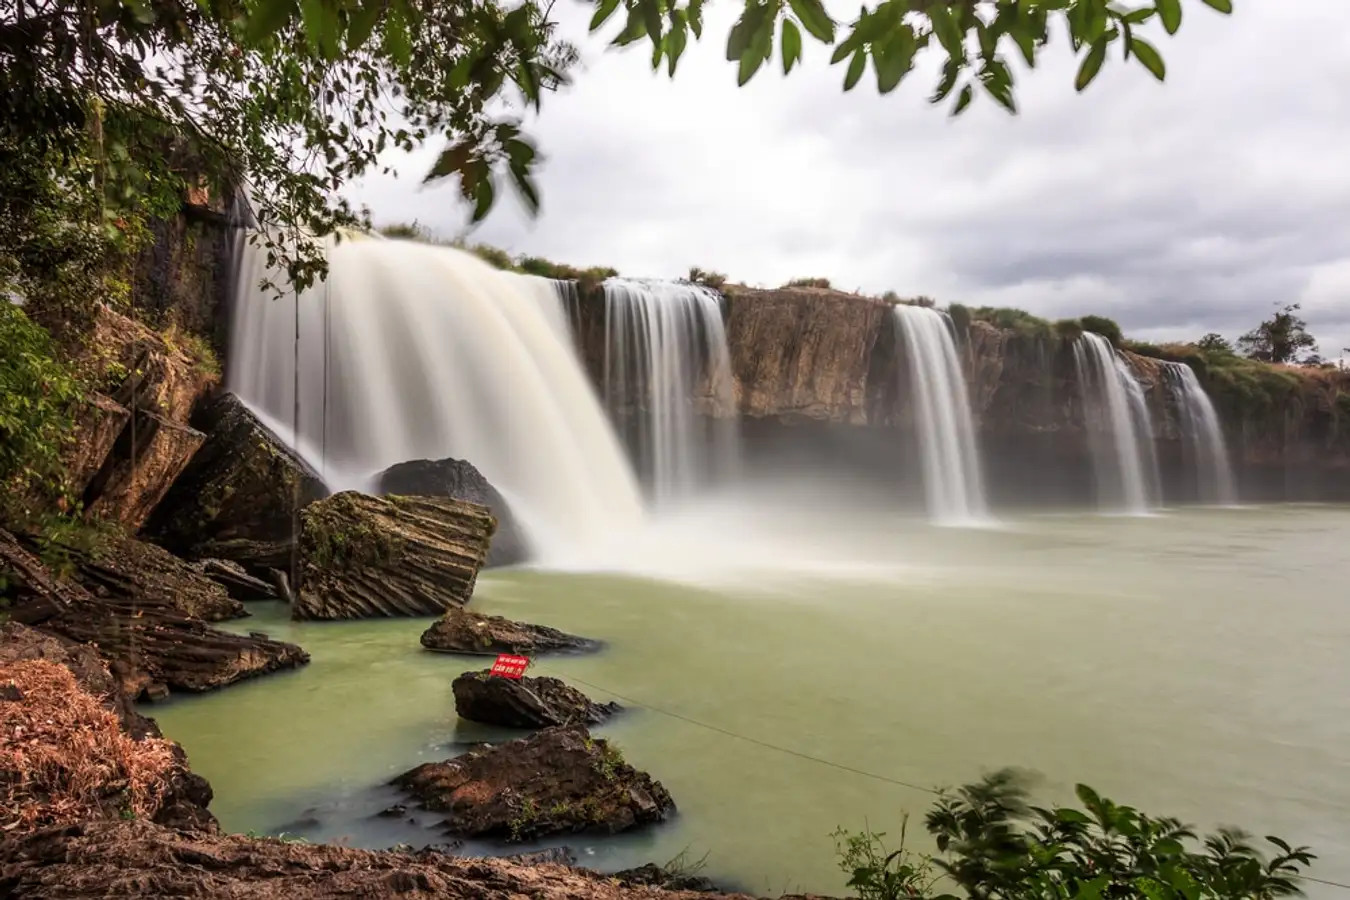 Thác Dray Sáp - Dray Nur- 2 dòng thác đẹp nhất Tây Nguyên